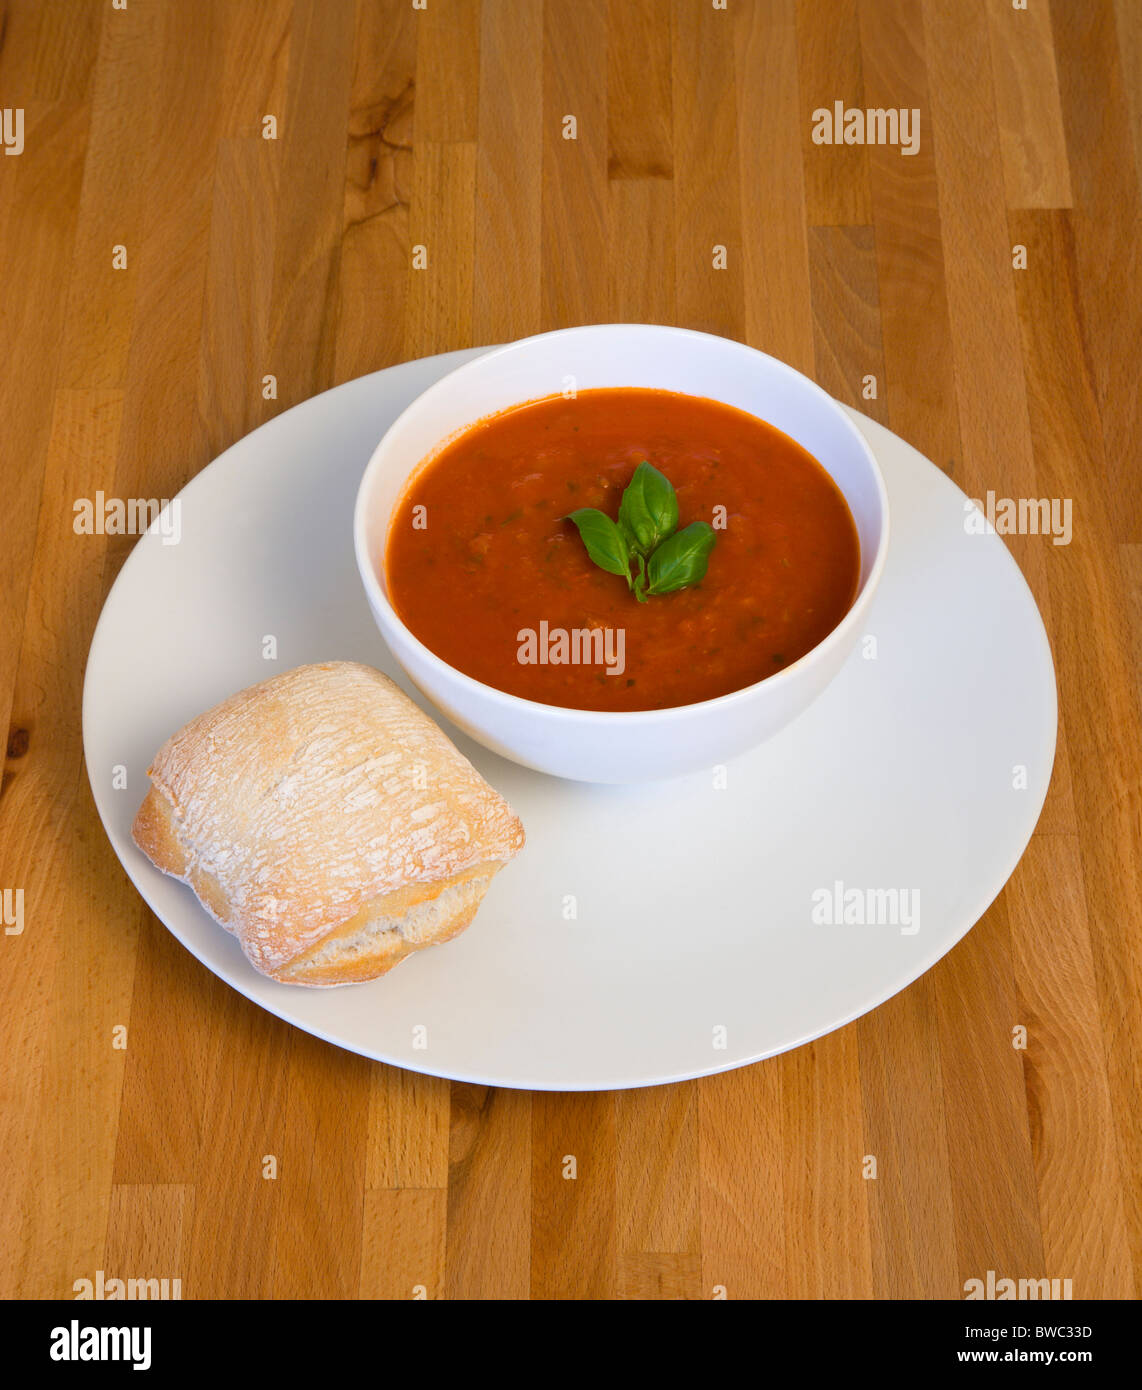 La nourriture, cuit, soupe, bol de soupe tomate et basilic sur une plaque avec un pain rustique de rouler sur une surface de table en bois. Banque D'Images